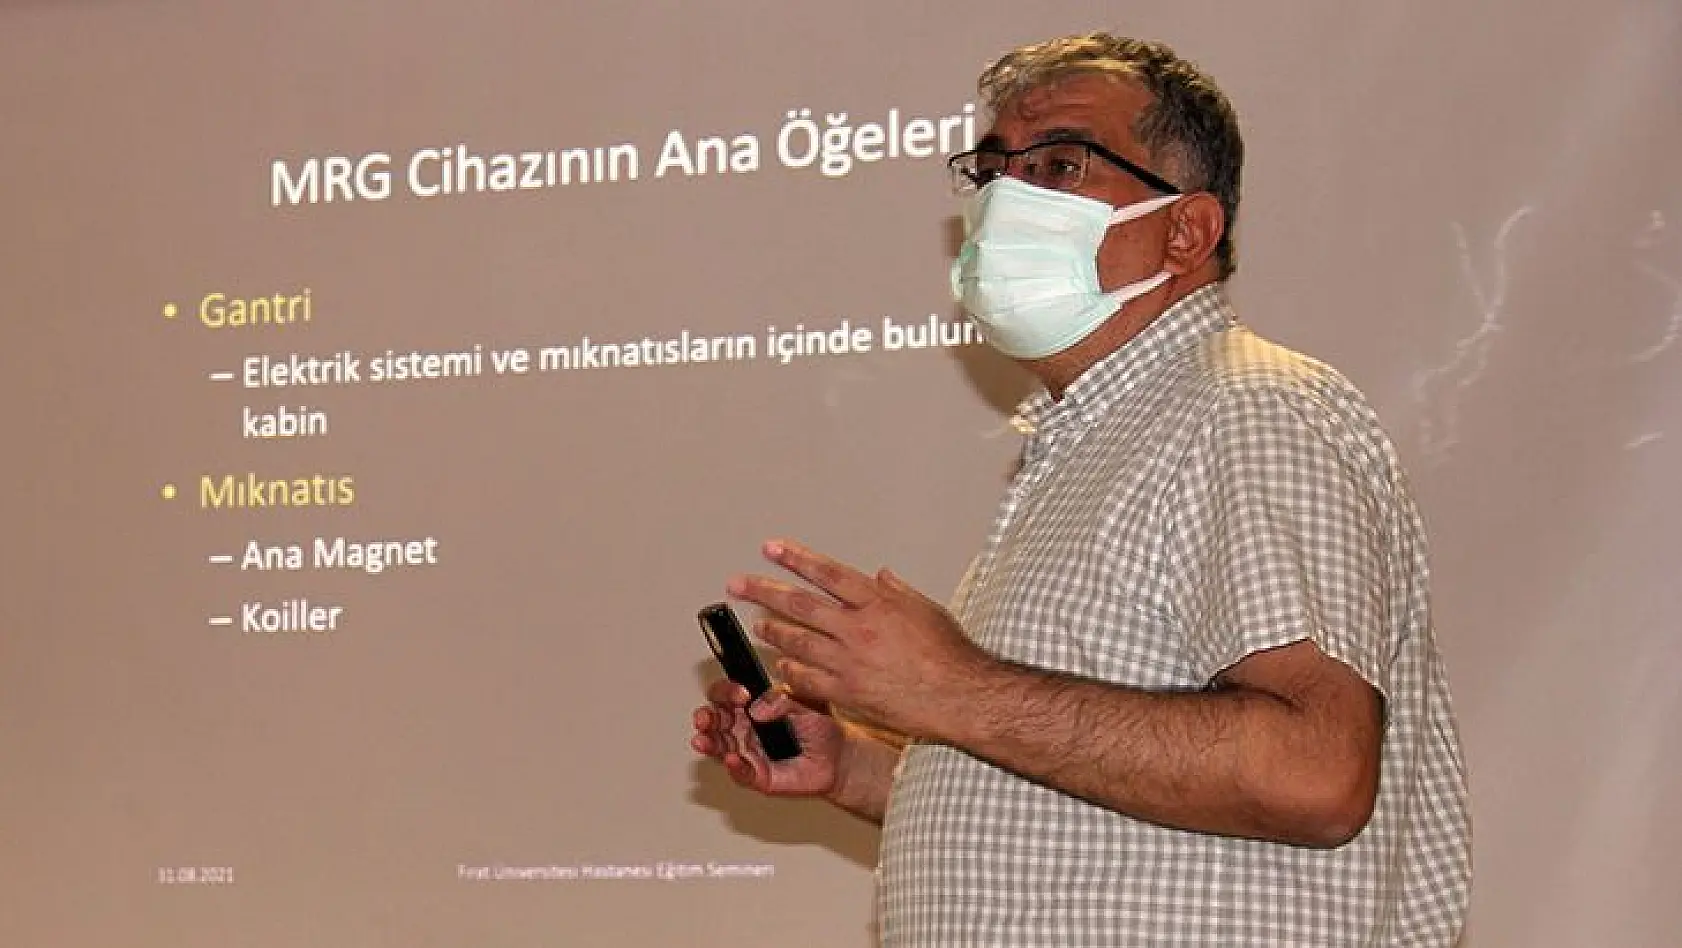 Doç. Dr. Murat Baykara: Mr Öncesinde Sağlık Personeli Hastadan Bilgi Almalı